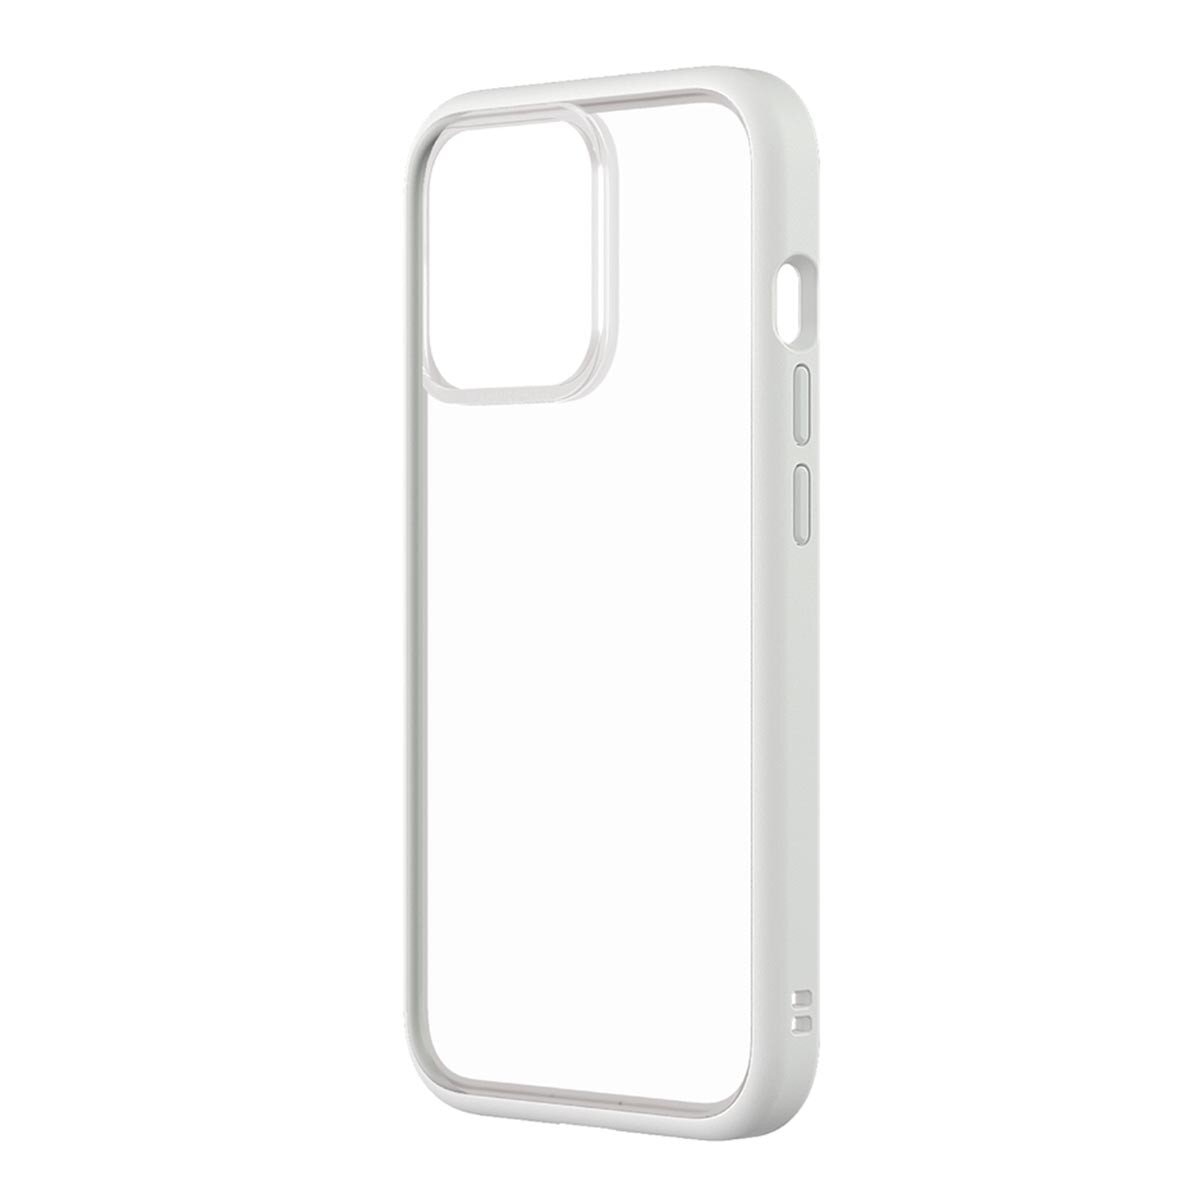 犀牛盾 iPhone 13 Pro Mod NX 手機殼附9H 3D滿版玻璃保護貼 白